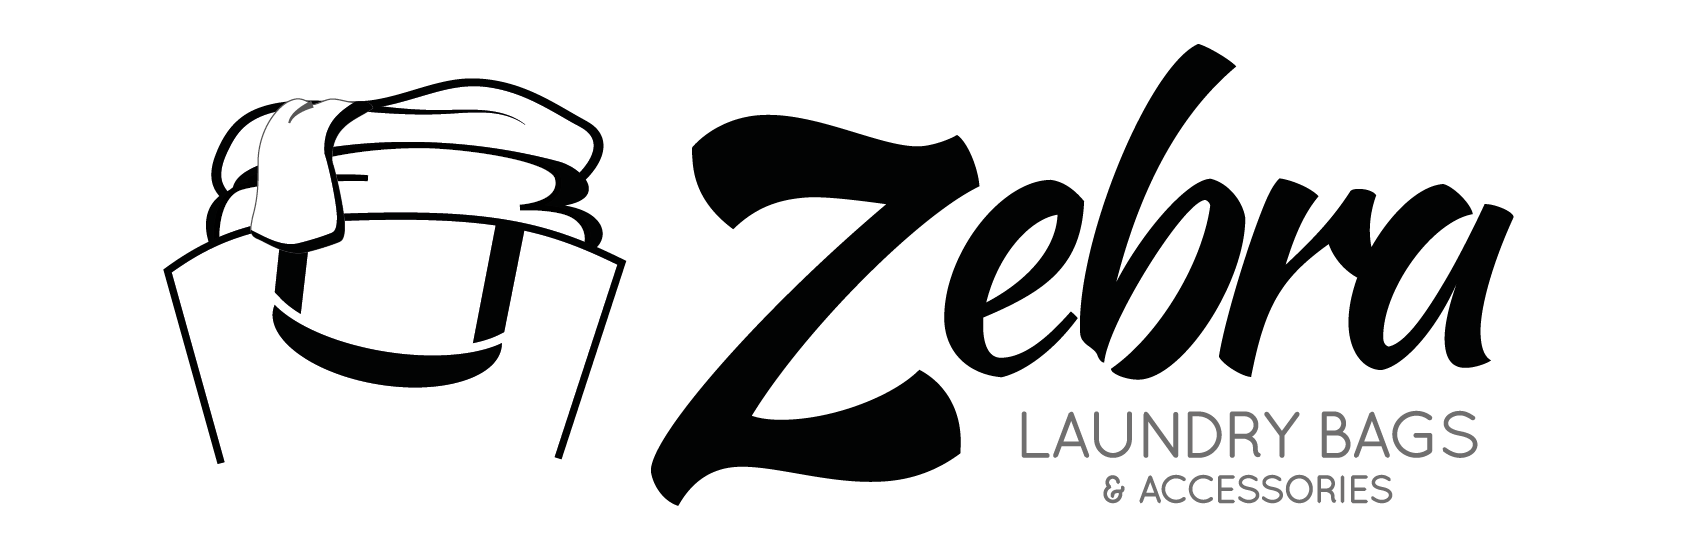 Zebra bolsas y complementos de lavandería - Logo